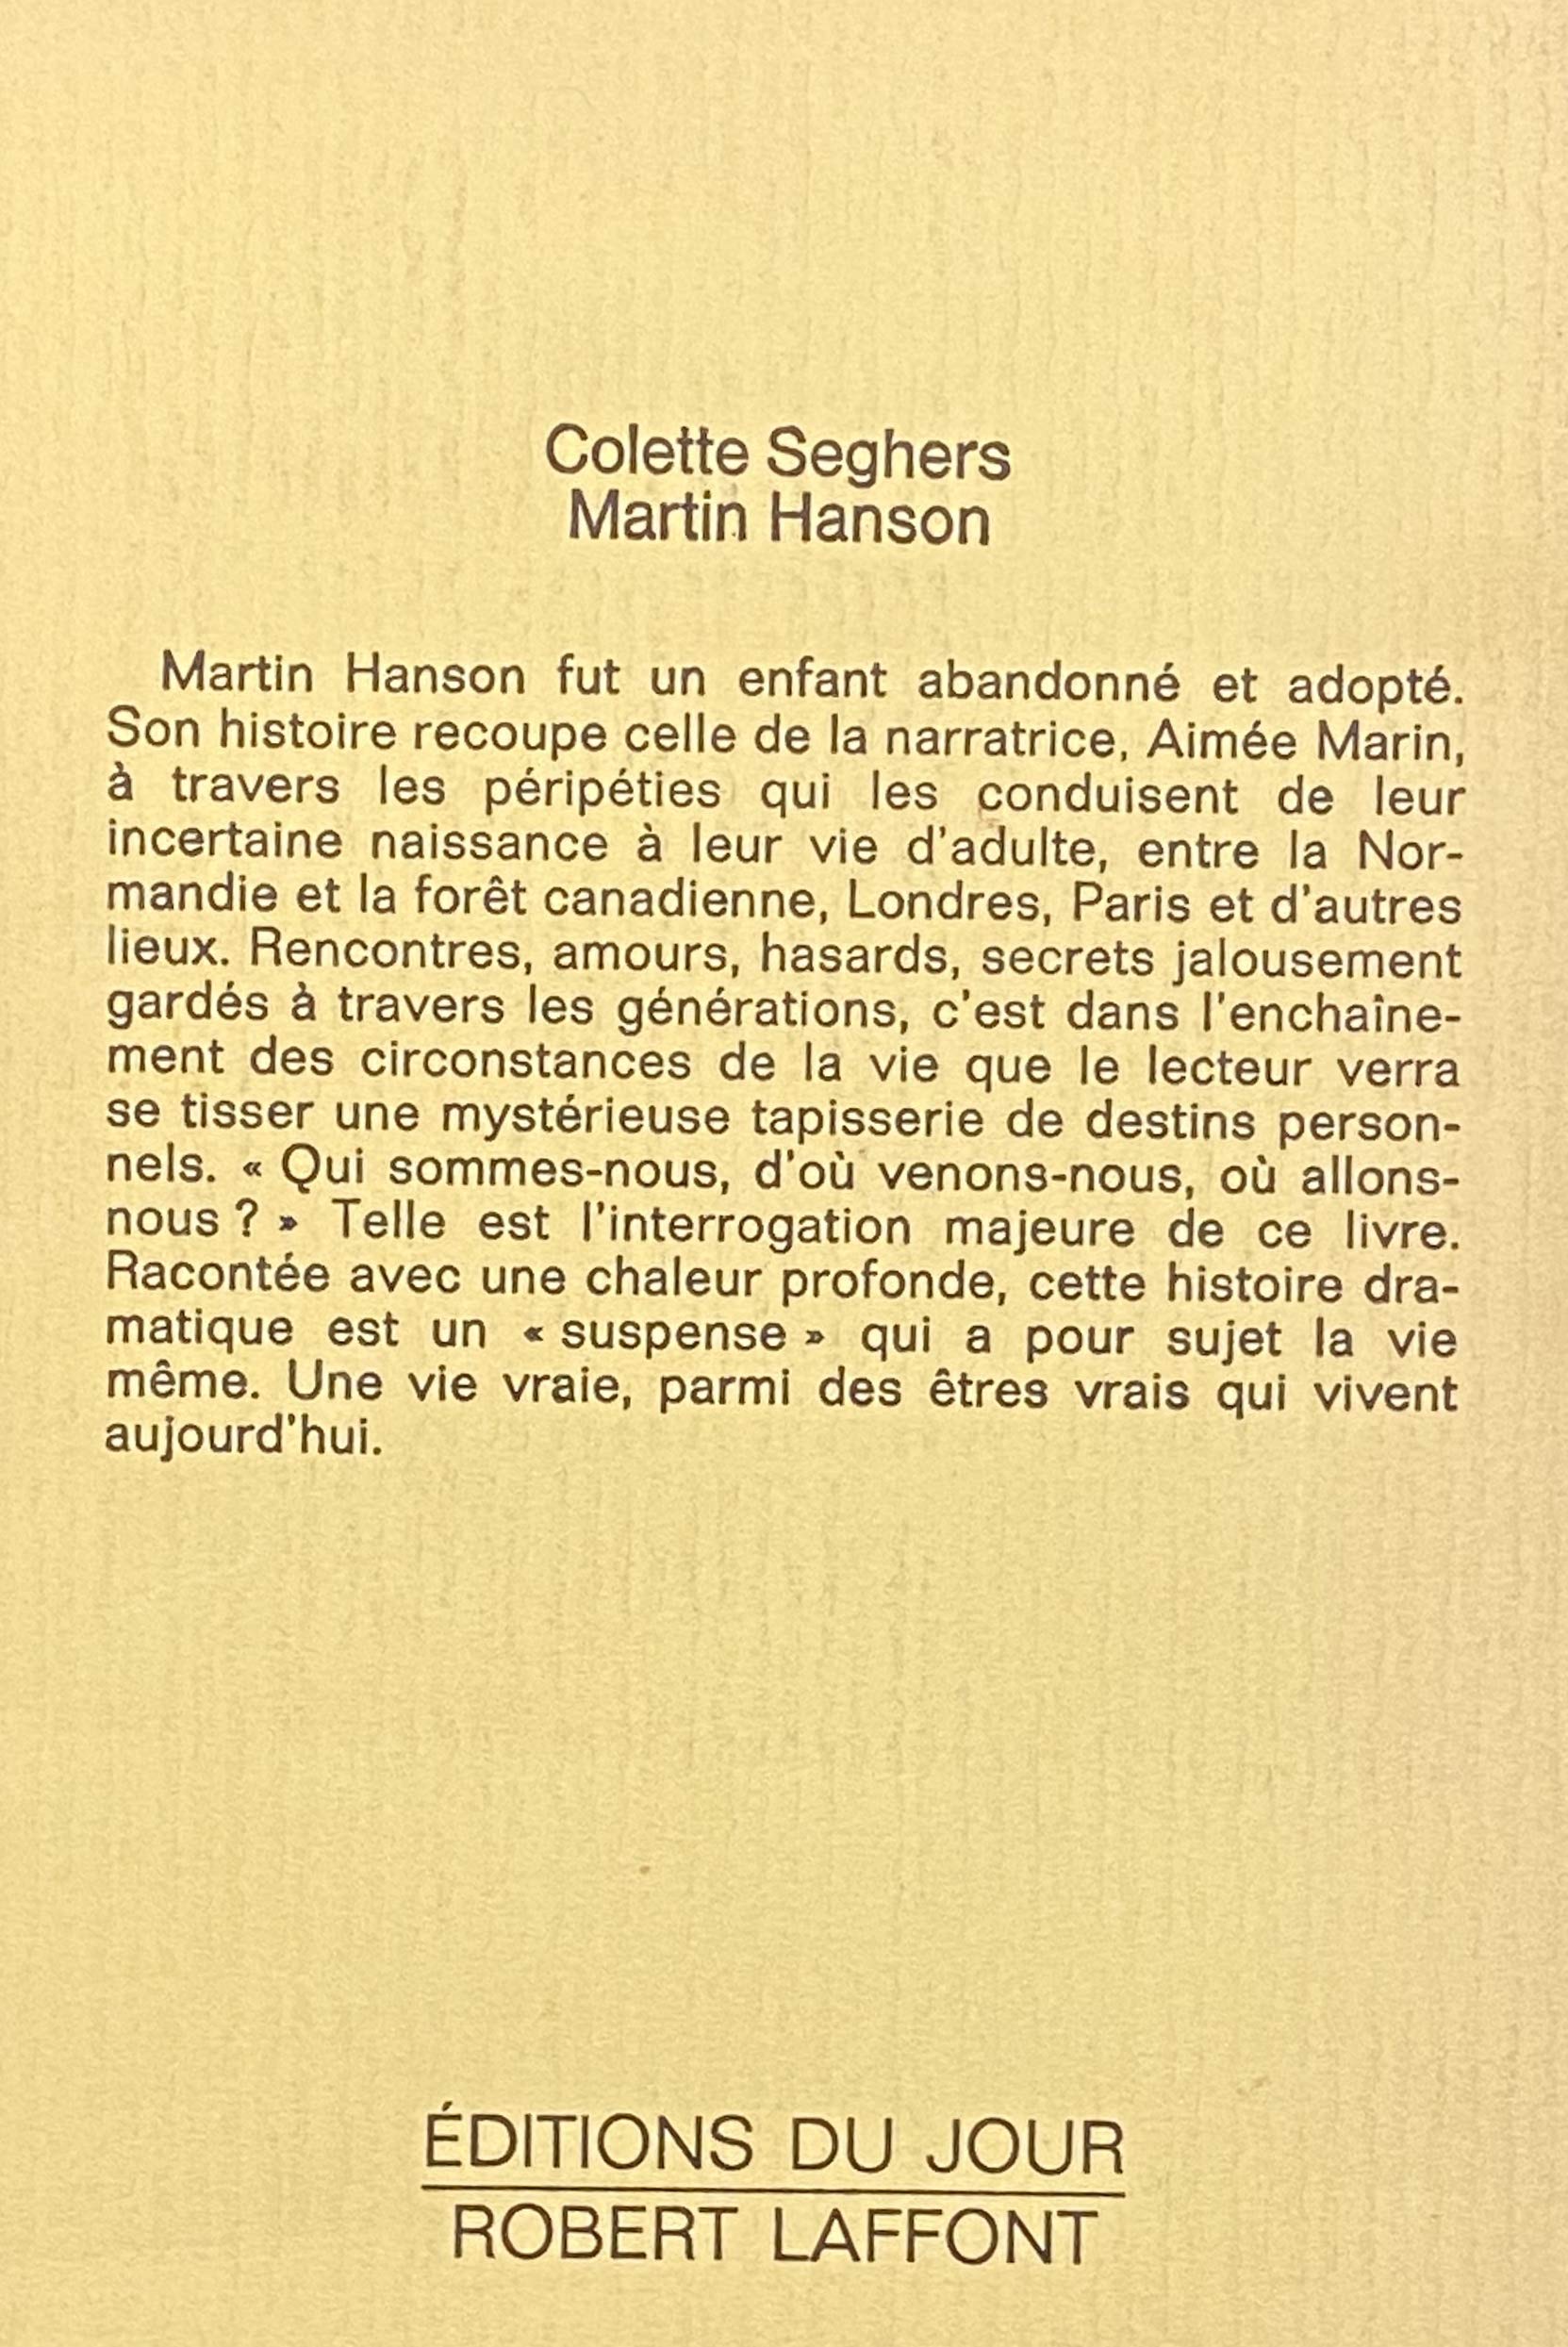 Martin Hanson (Colette Seghers)